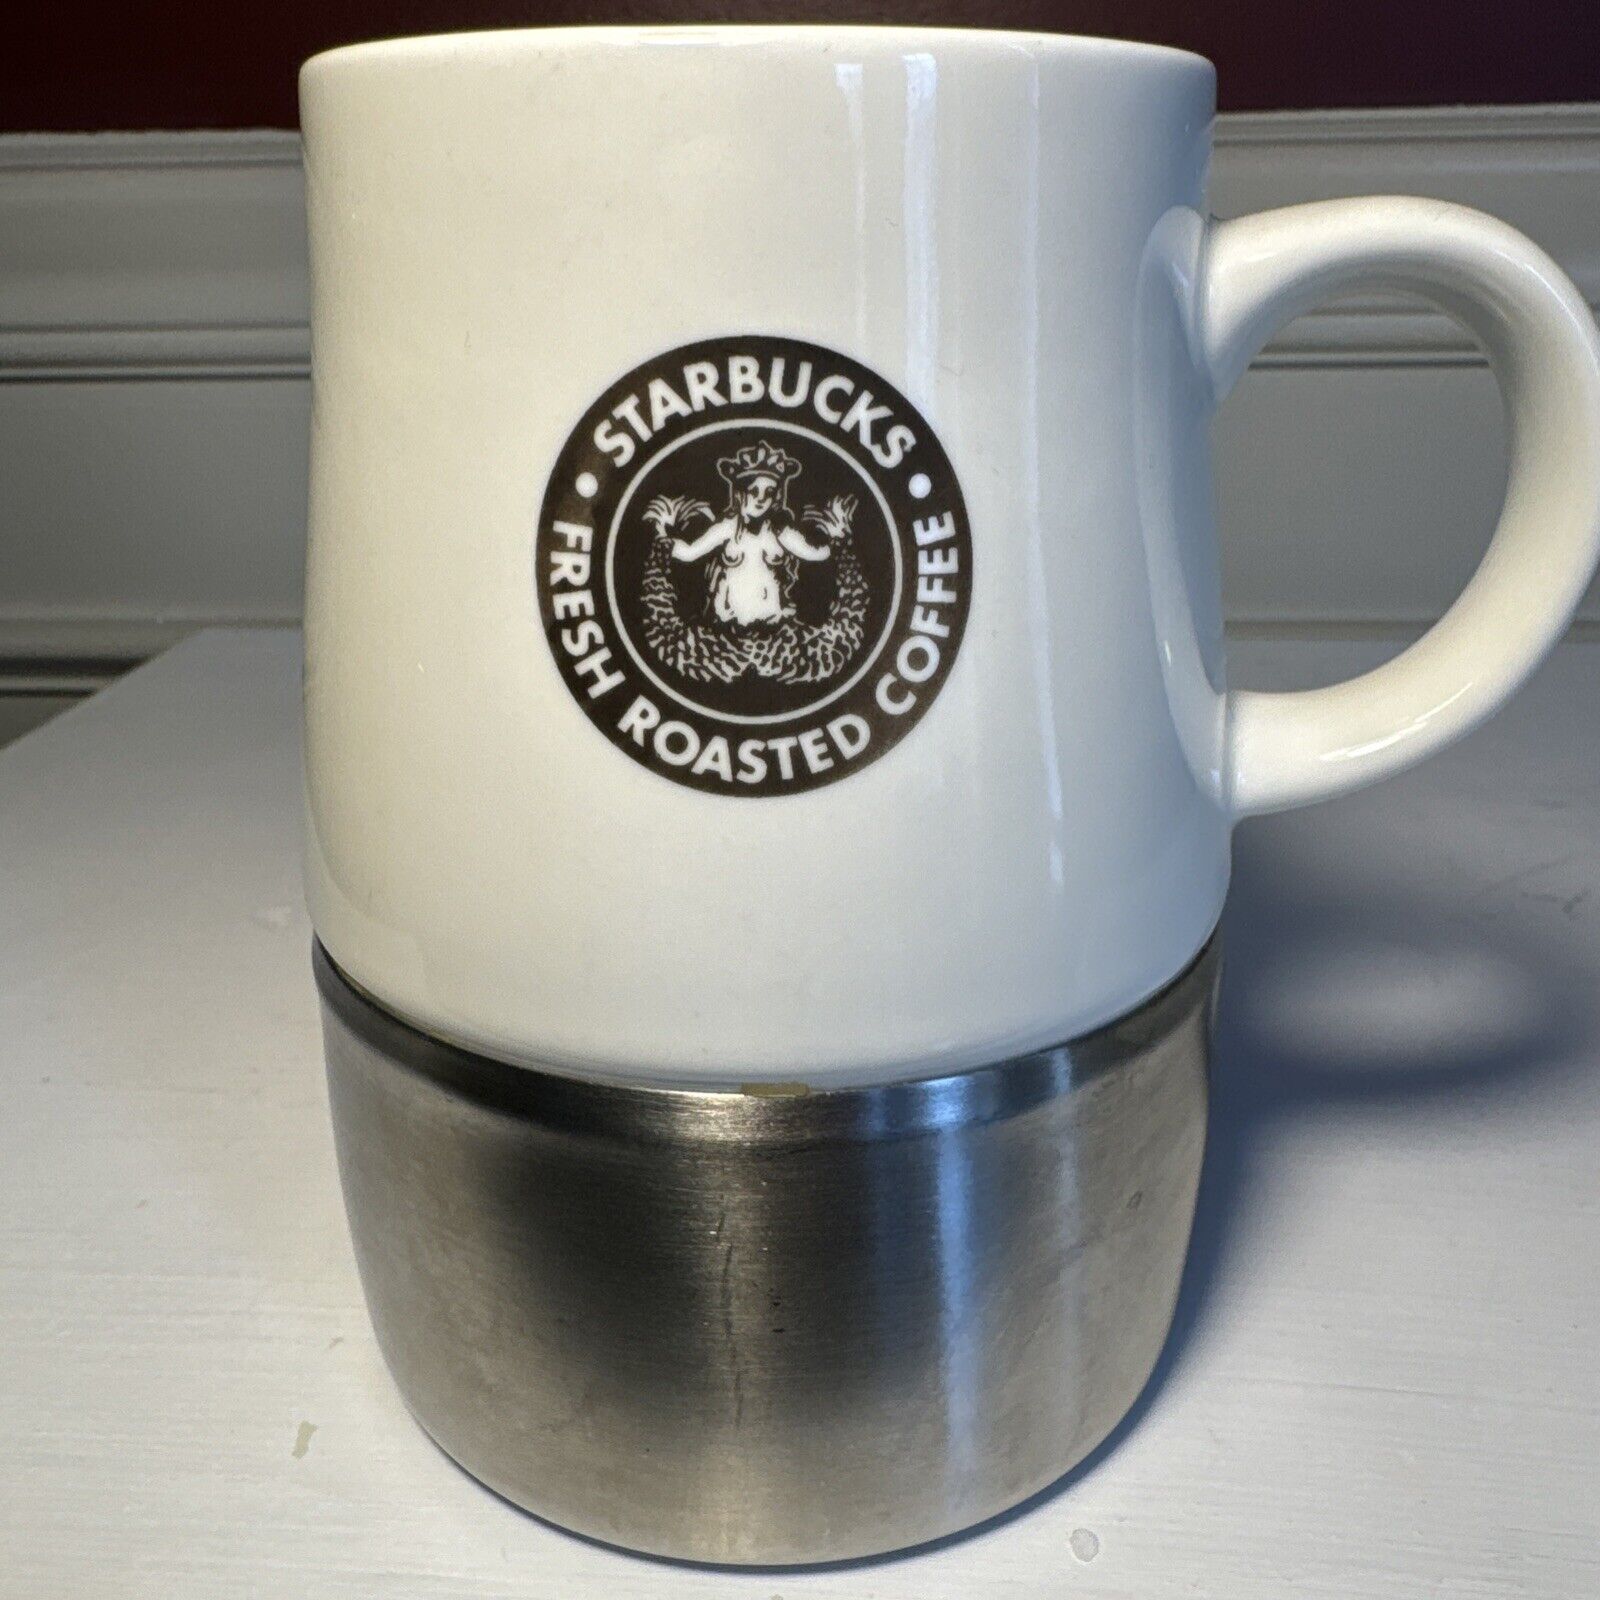 2004 Starbucks Ceramic Travel Mug  w/ Stainless Steel Bottom 14 fluid oz